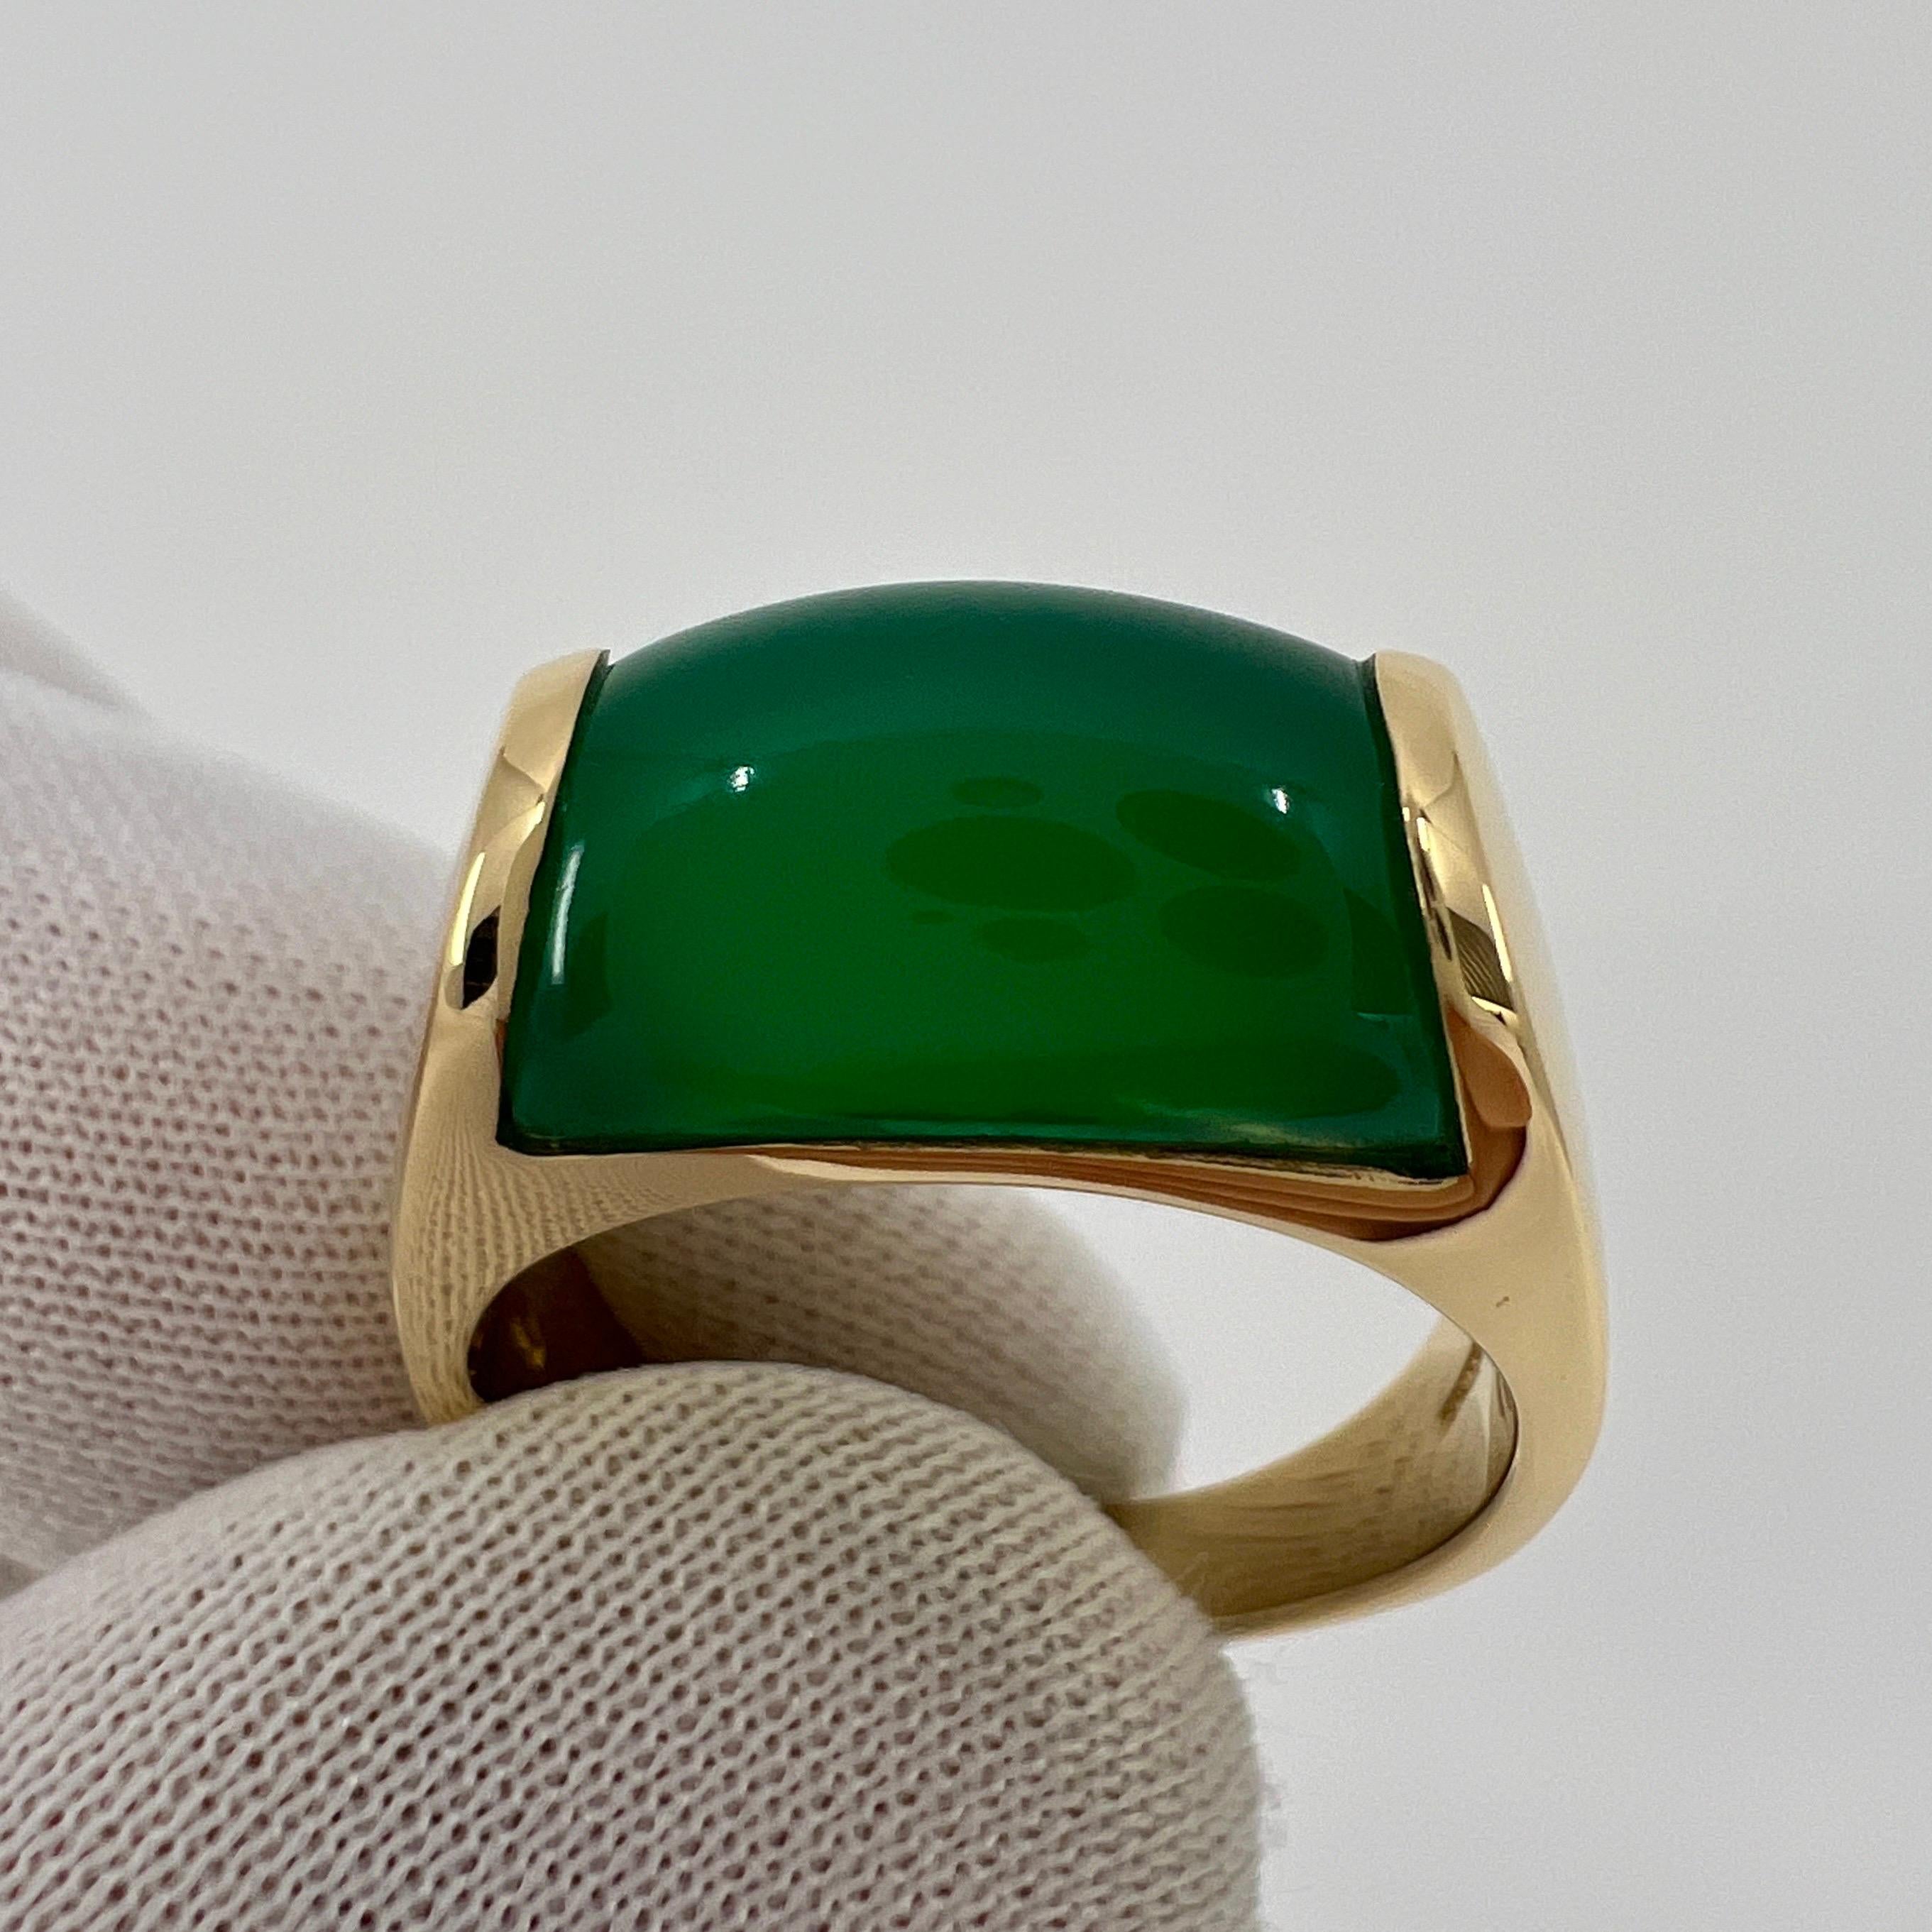 Seltener Bvlgari Vivid Green Chalcedony 18k Gelbgold Ring.

Schöner gewölbter 'glühender' grüner Chalzedon in einem feinen Ring aus 18k Gelbgold mit Spannring.

In ausgezeichnetem Zustand, wurde professionell poliert und gereinigt.

Ringgröße: UK